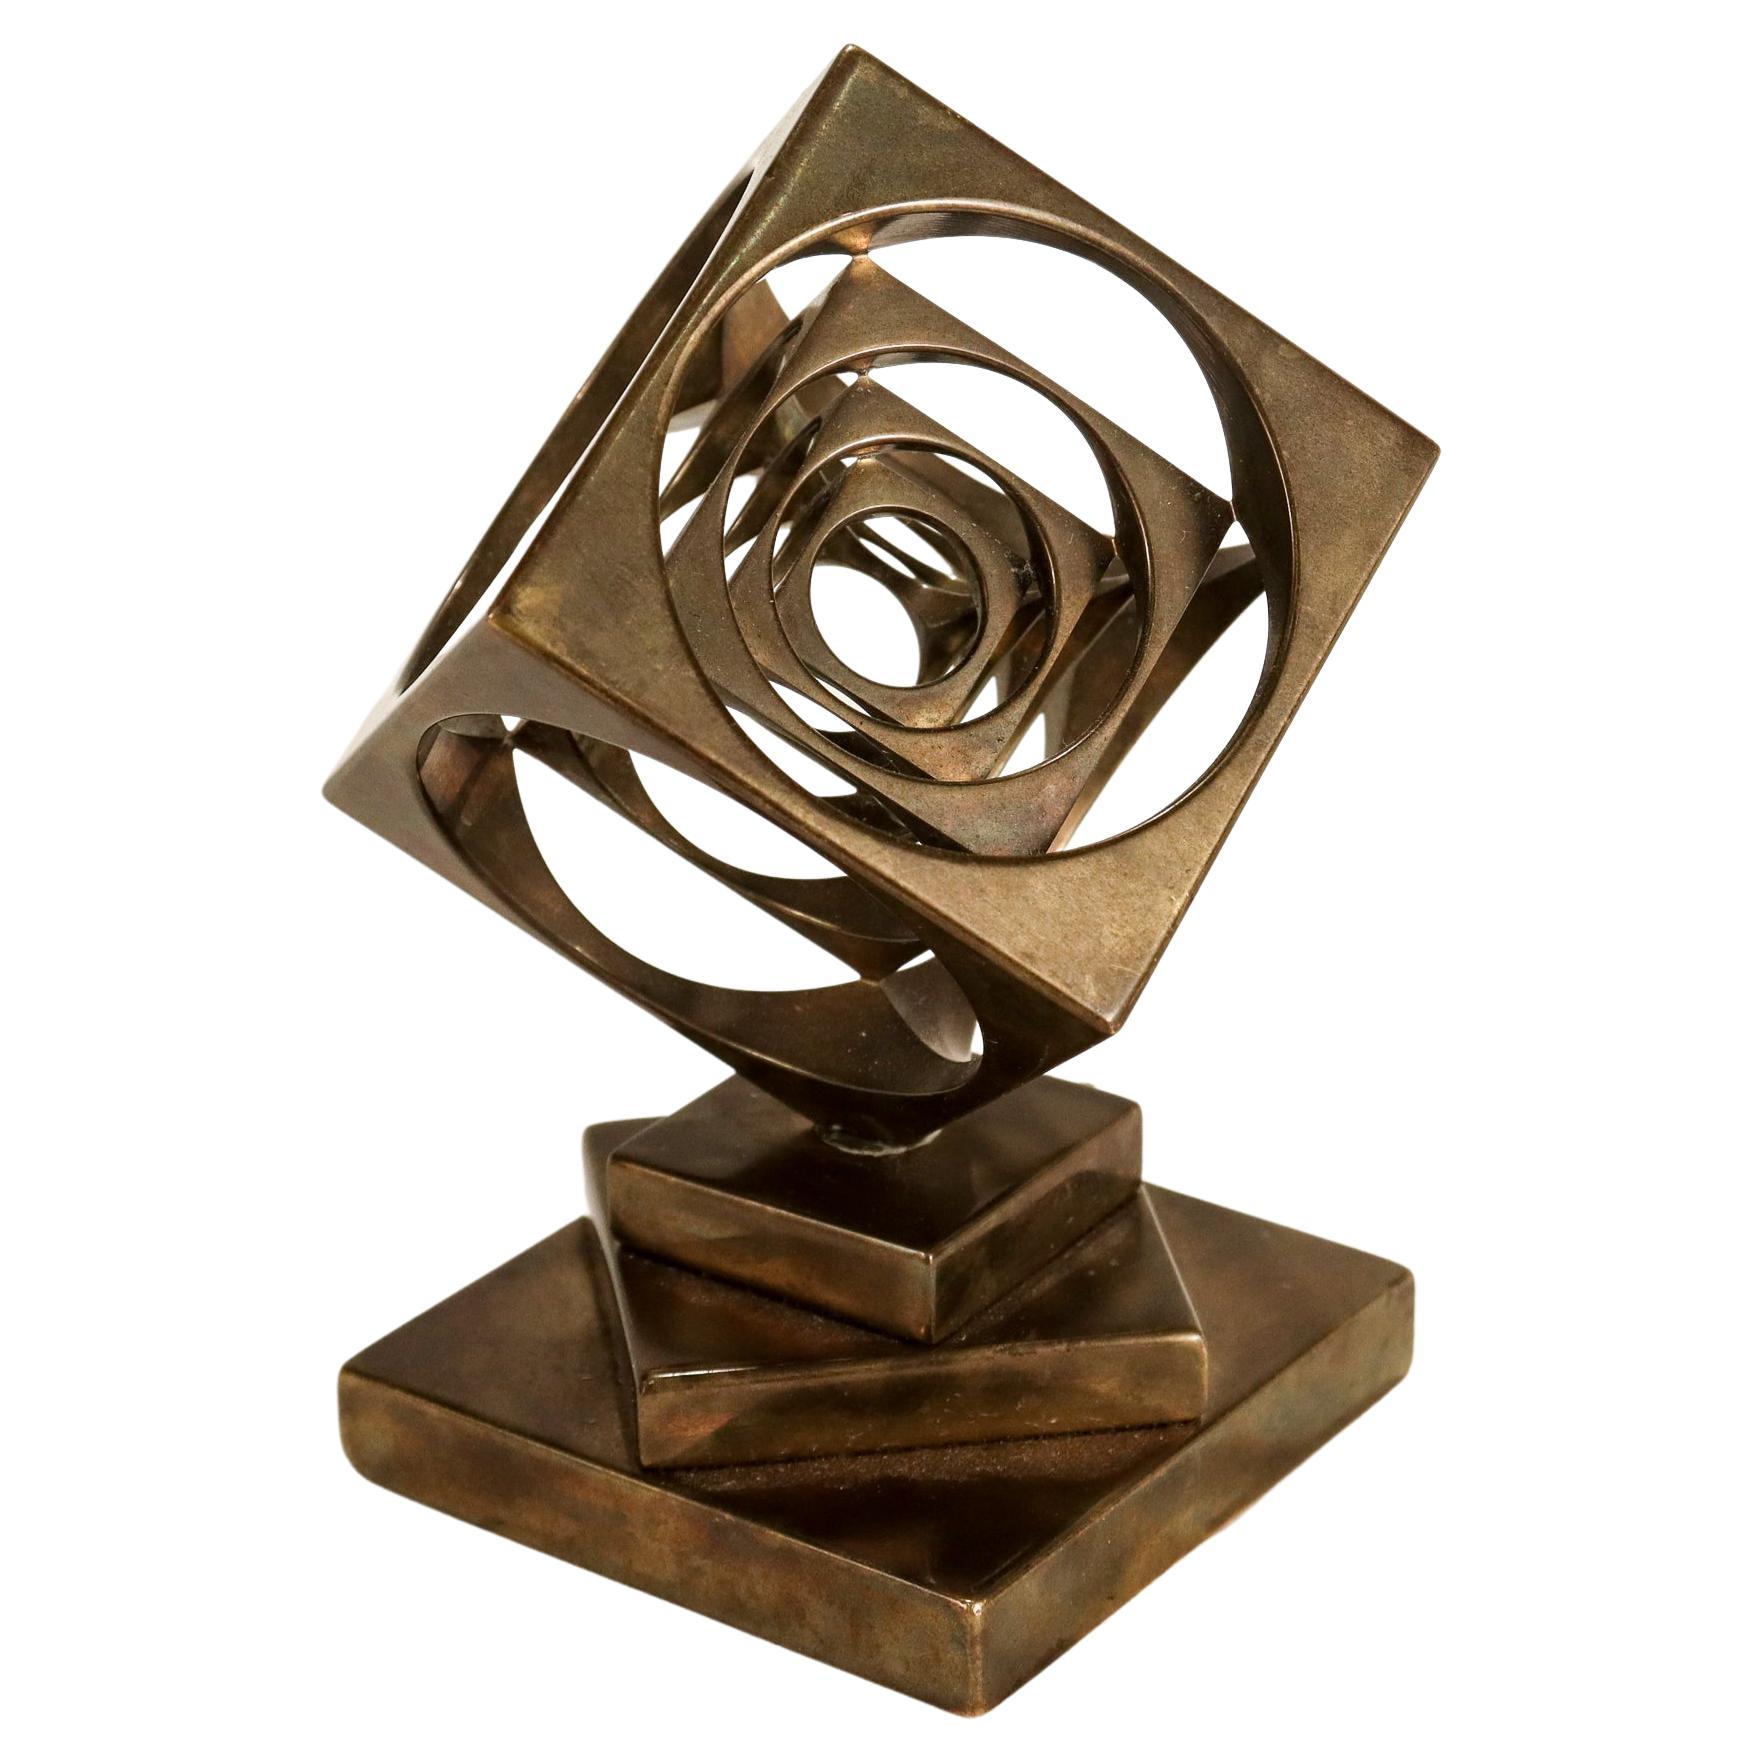 Presse-papier de bureau / sculpture géométrique du milieu du siècle en bronze usiné Turner's Cube